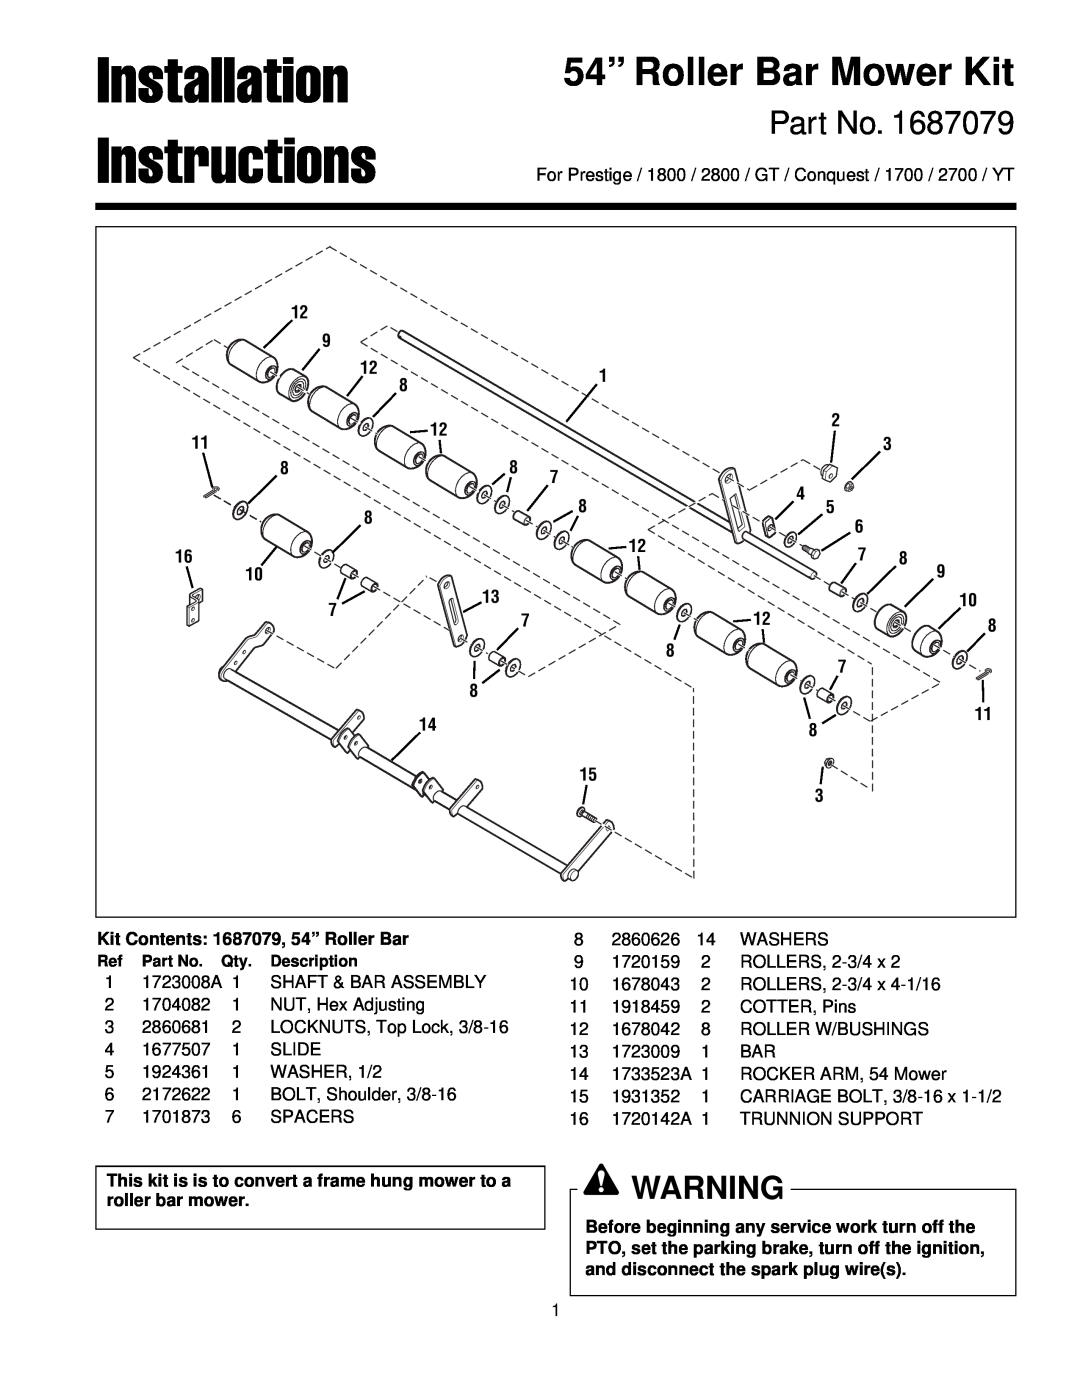 Briggs & Stratton 1687079 installation instructions Installation, Instructions, 54” Roller Bar Mower Kit 